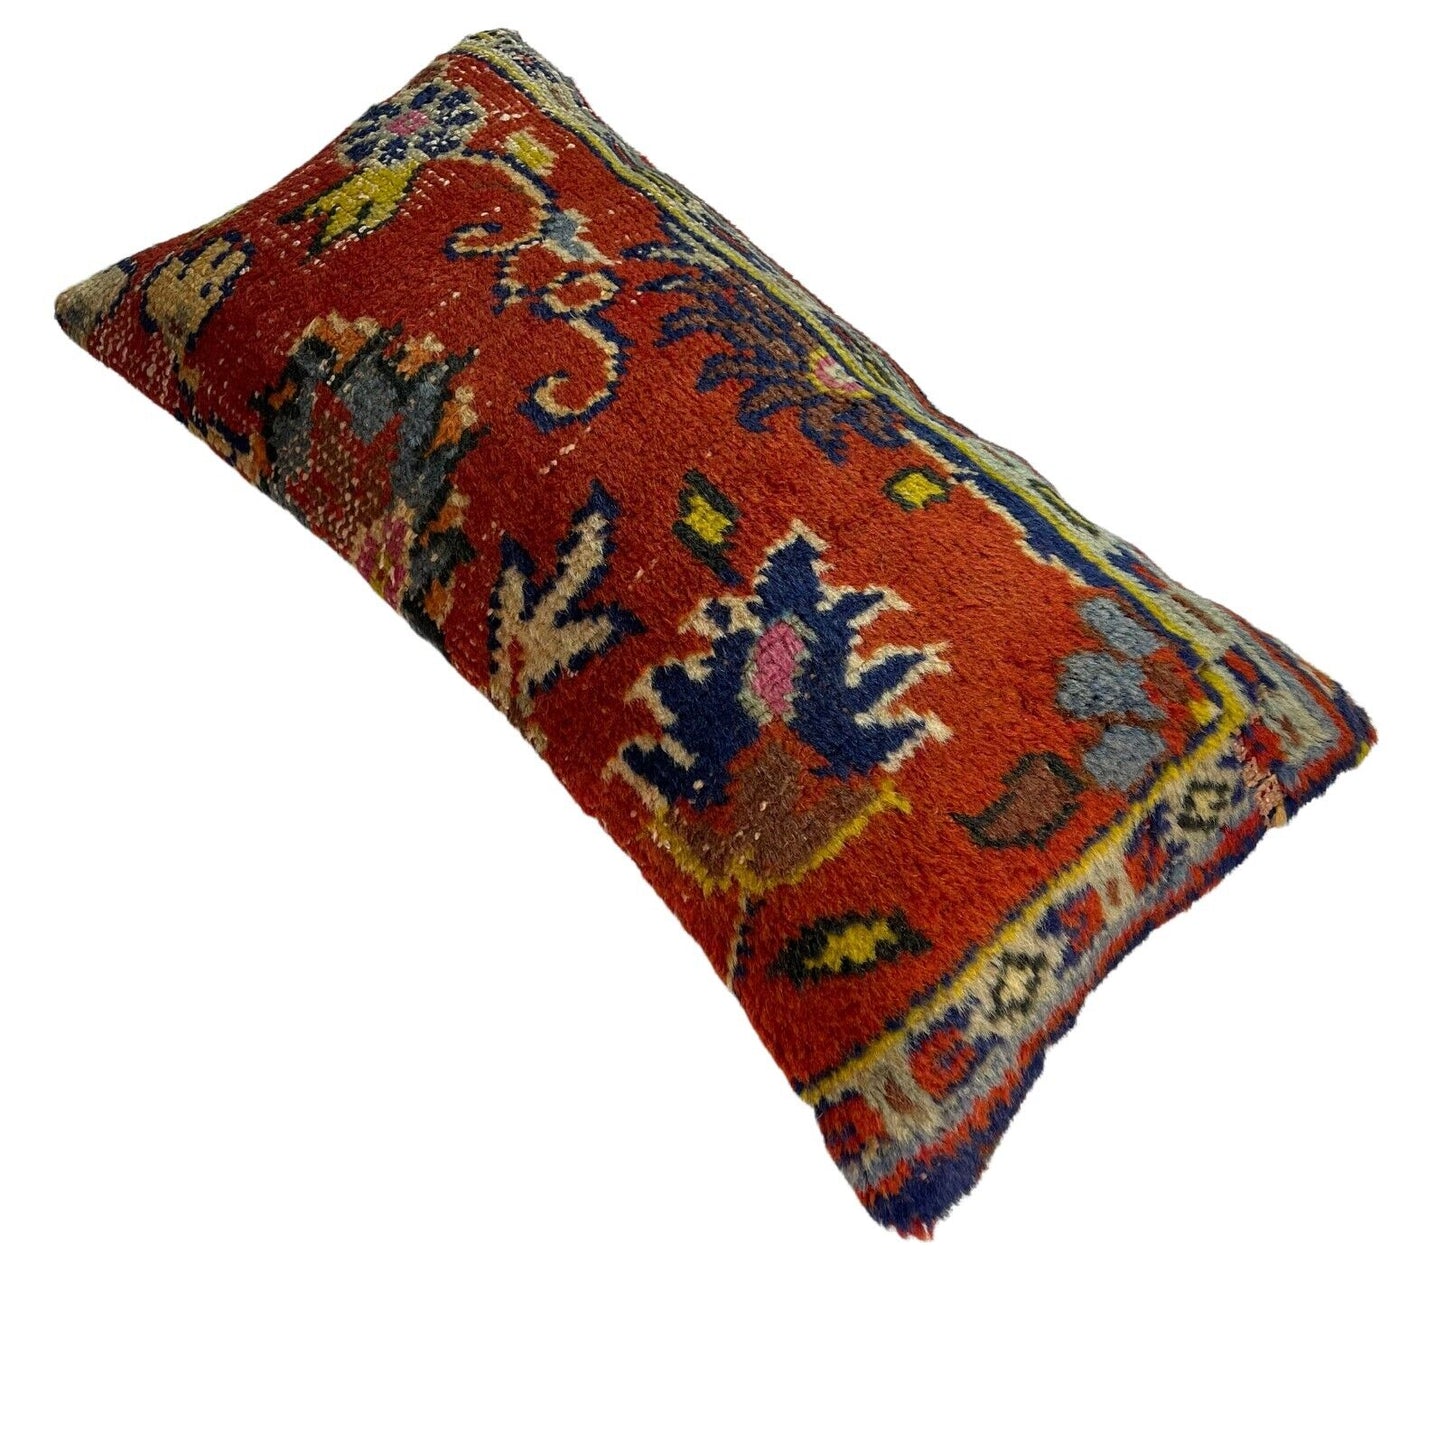 30x60 cm Vintage Türkisch Kissenbezug , Vintage Turkish Cushion Cover LL1436